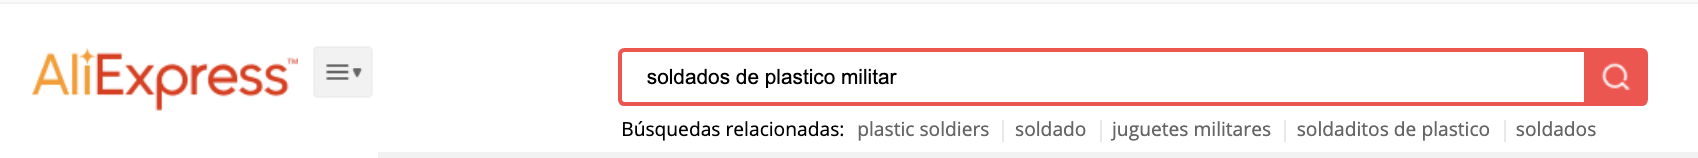 soldados de plástico militar en aliexpress